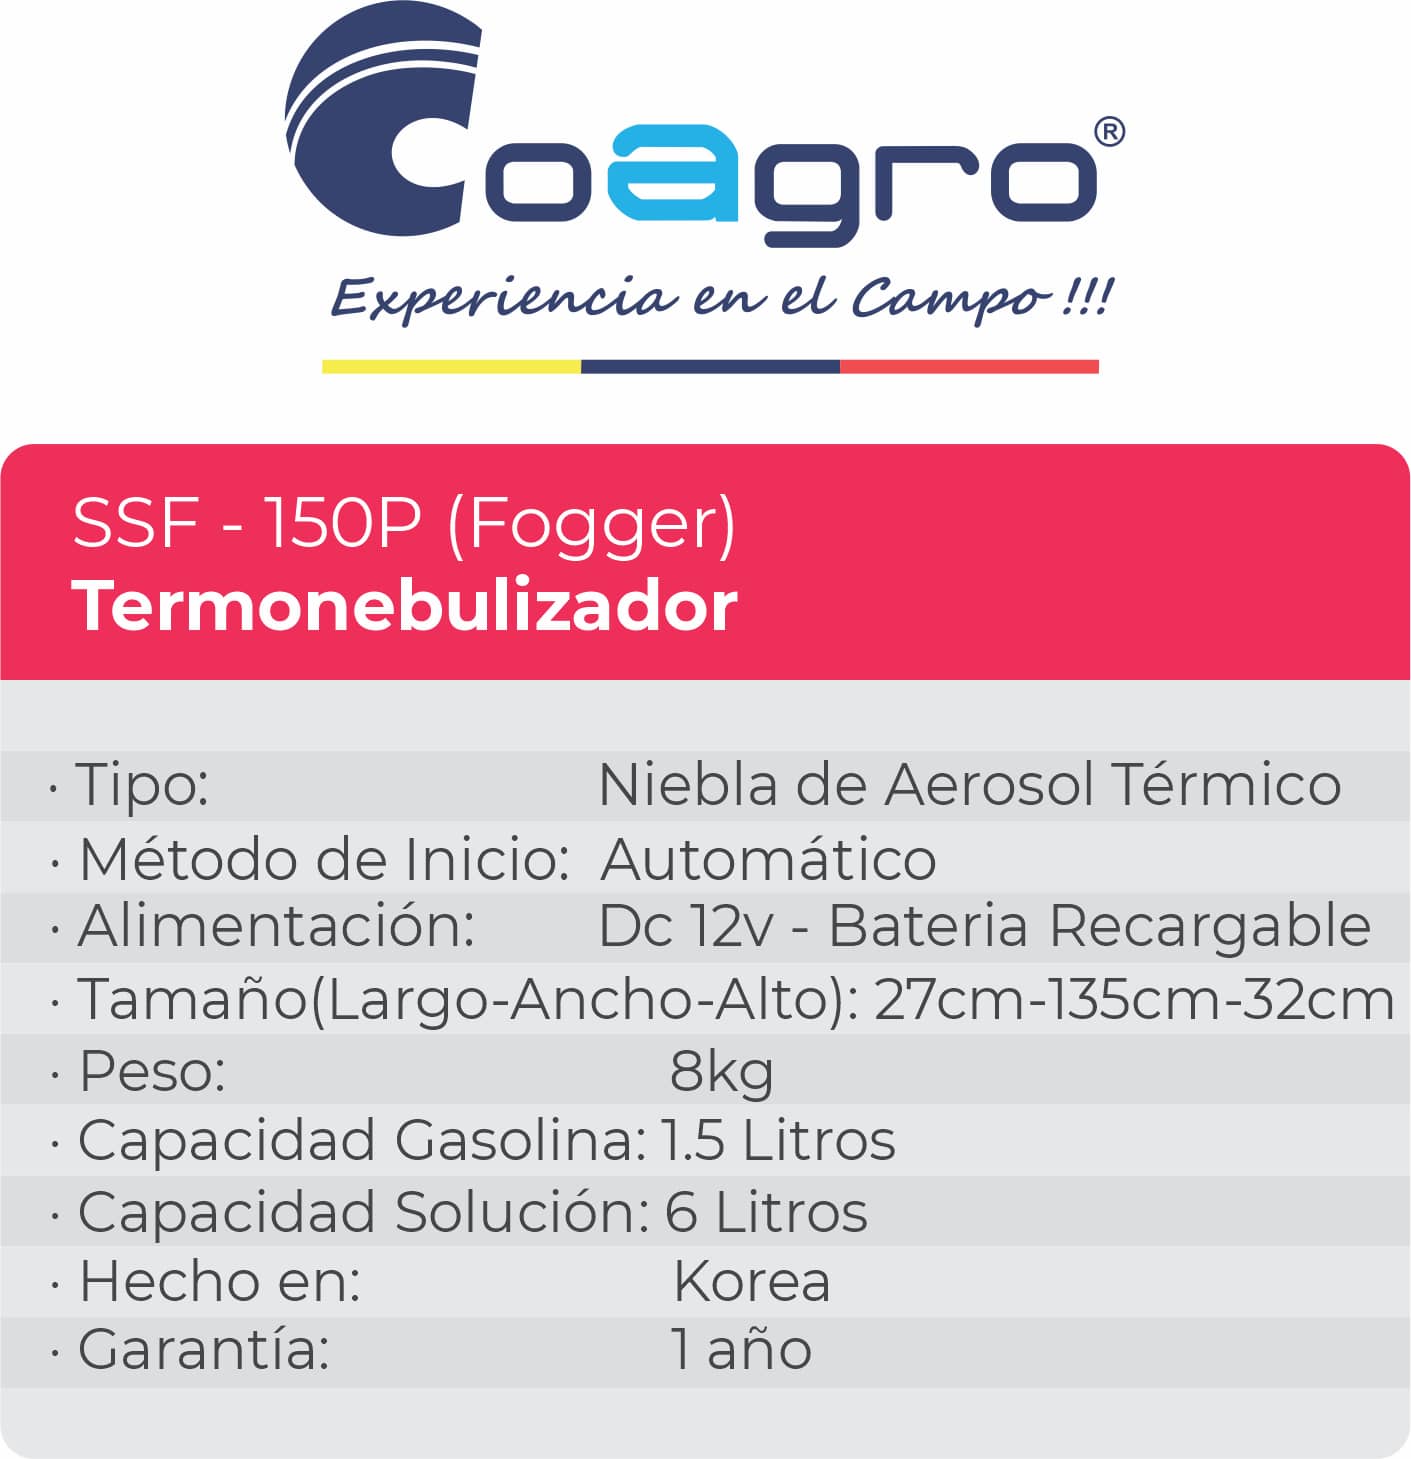 Termonebulizador SSF – 150P (Fogger)